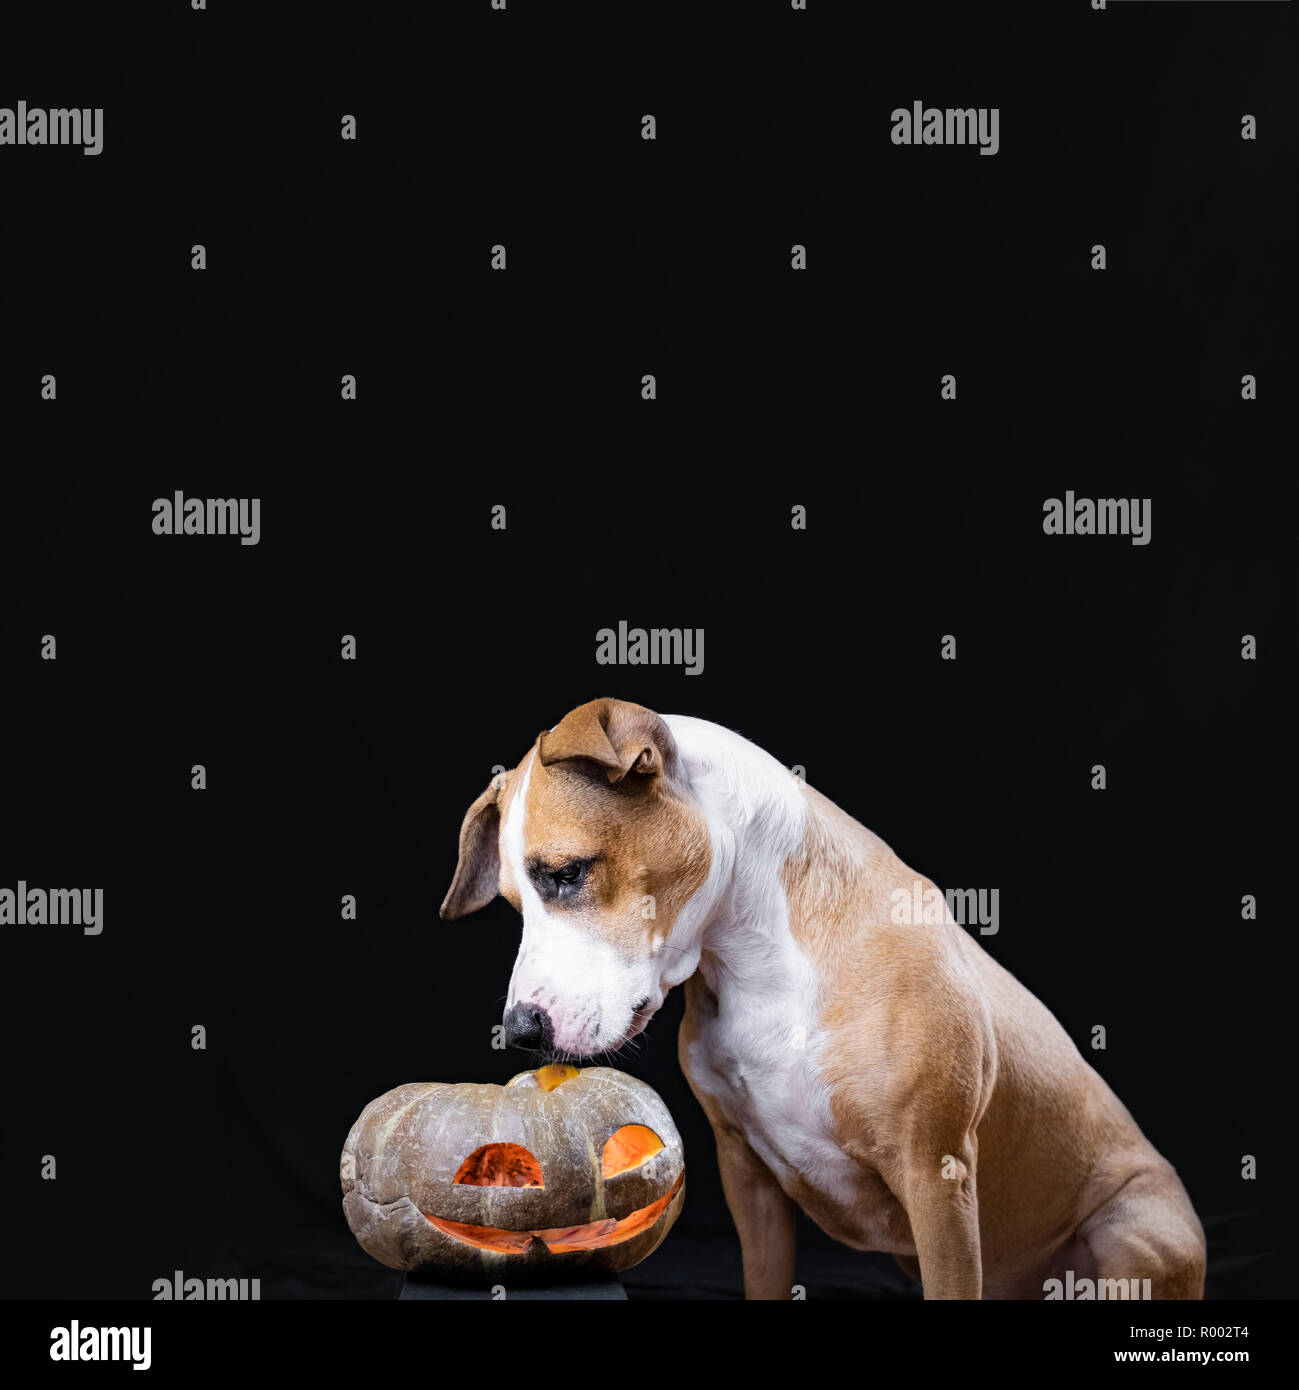 Hund und Halloween Kürbis Laterne auf schwarzem Hintergrund. Cute Staffordshire Terrier Welpe sitzt und schaut auf geschnitzten Jack'o'Lantern face Stockfoto